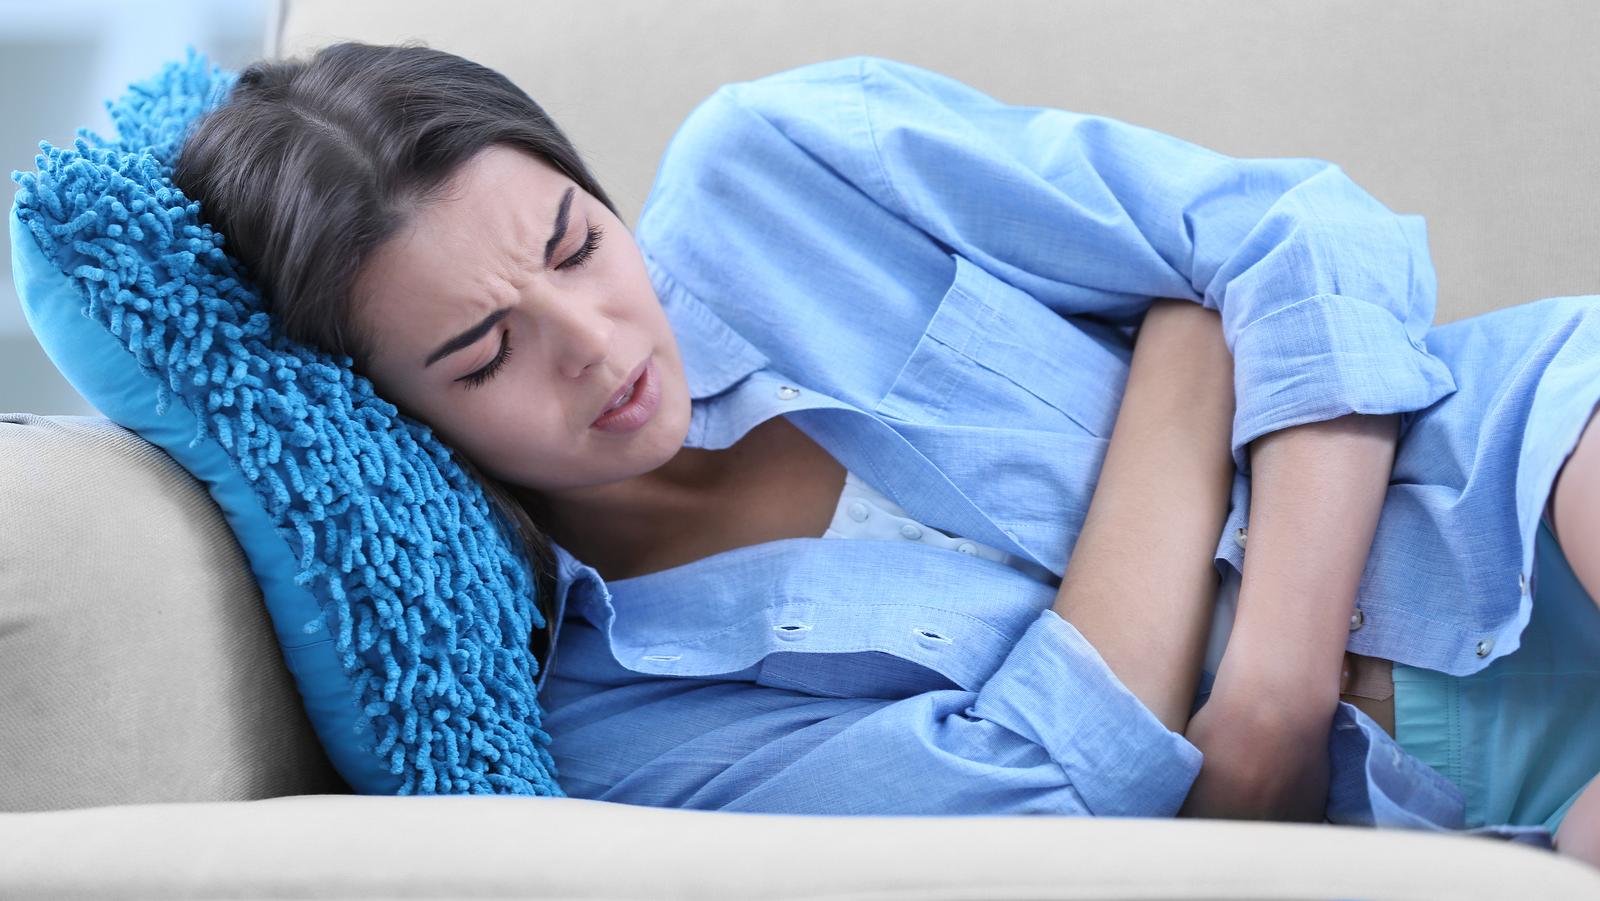 Az endometriózis rendkívül fájdalmas betegség